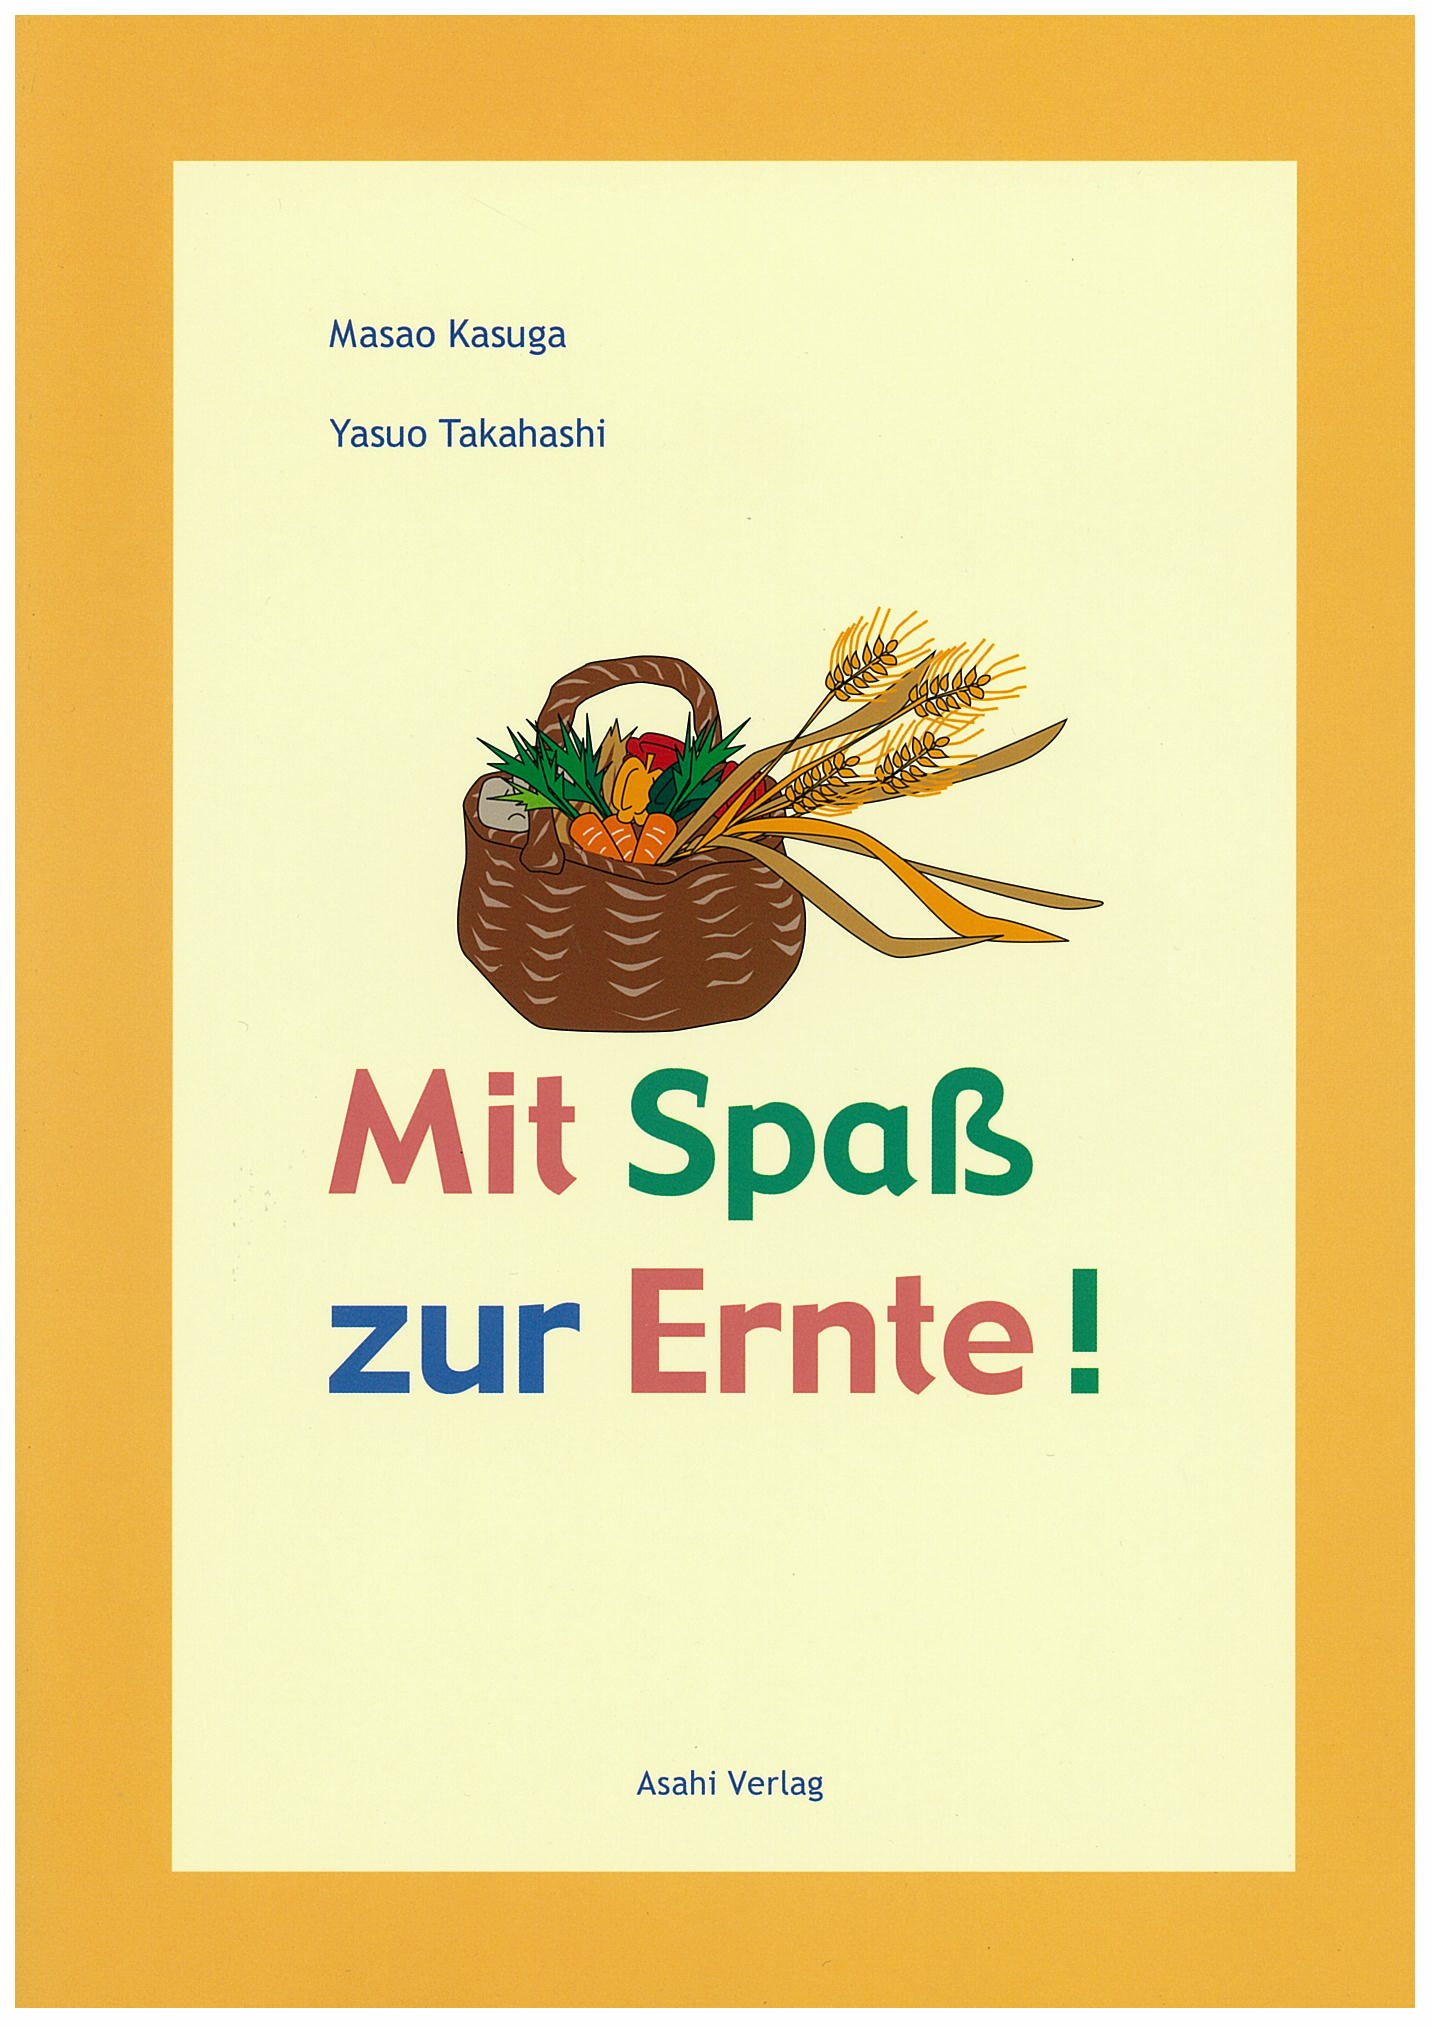 ドイツ語の収穫 ｃｄ付 教科書 ドイツ語 朝日出版社